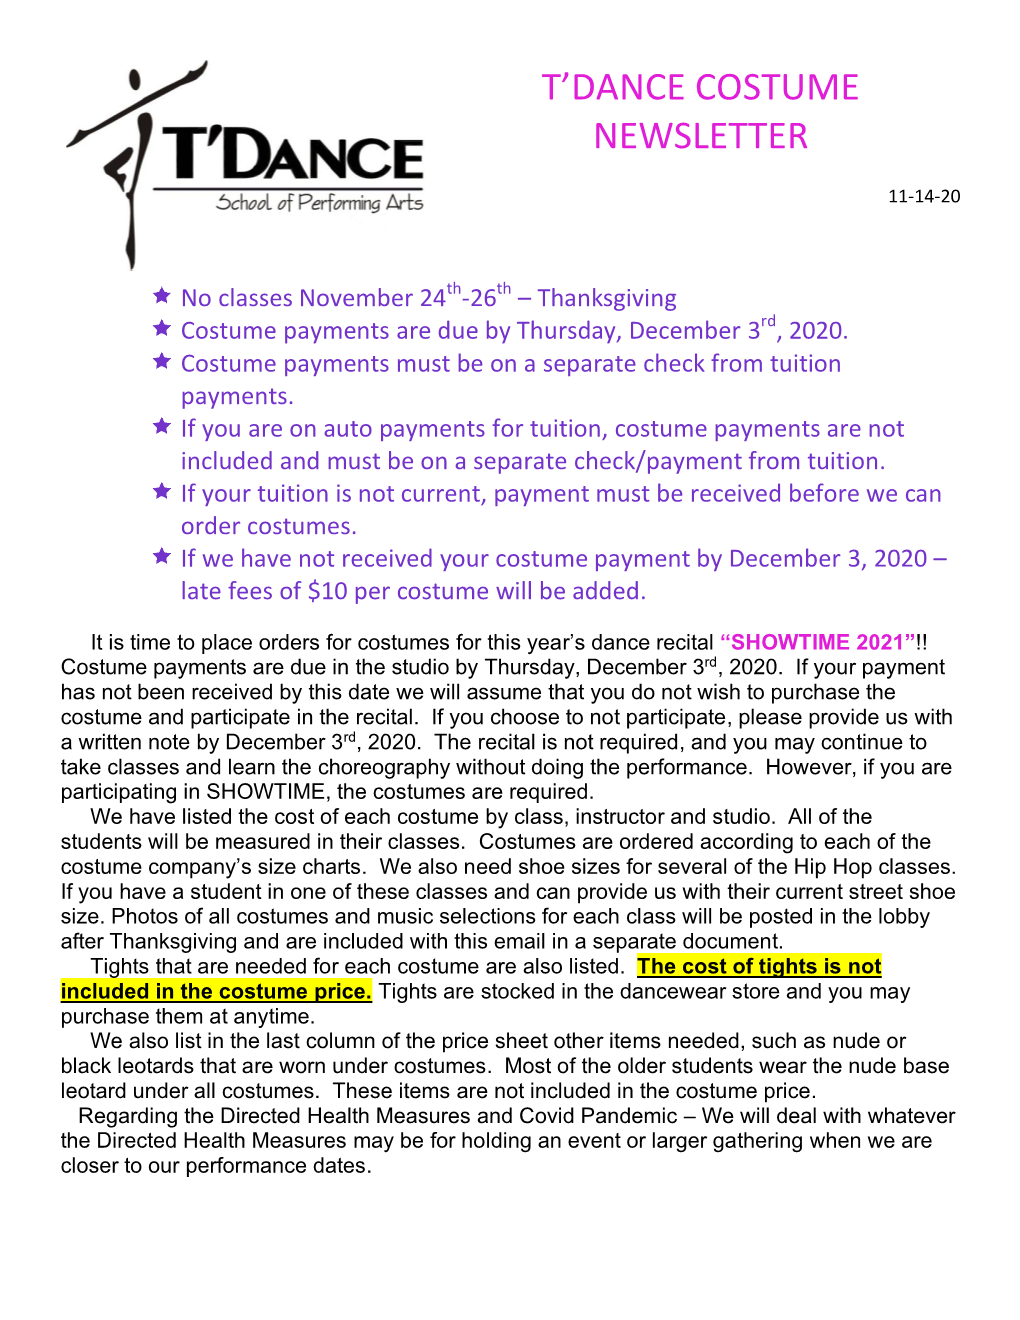 T'dance Costume Newsletter